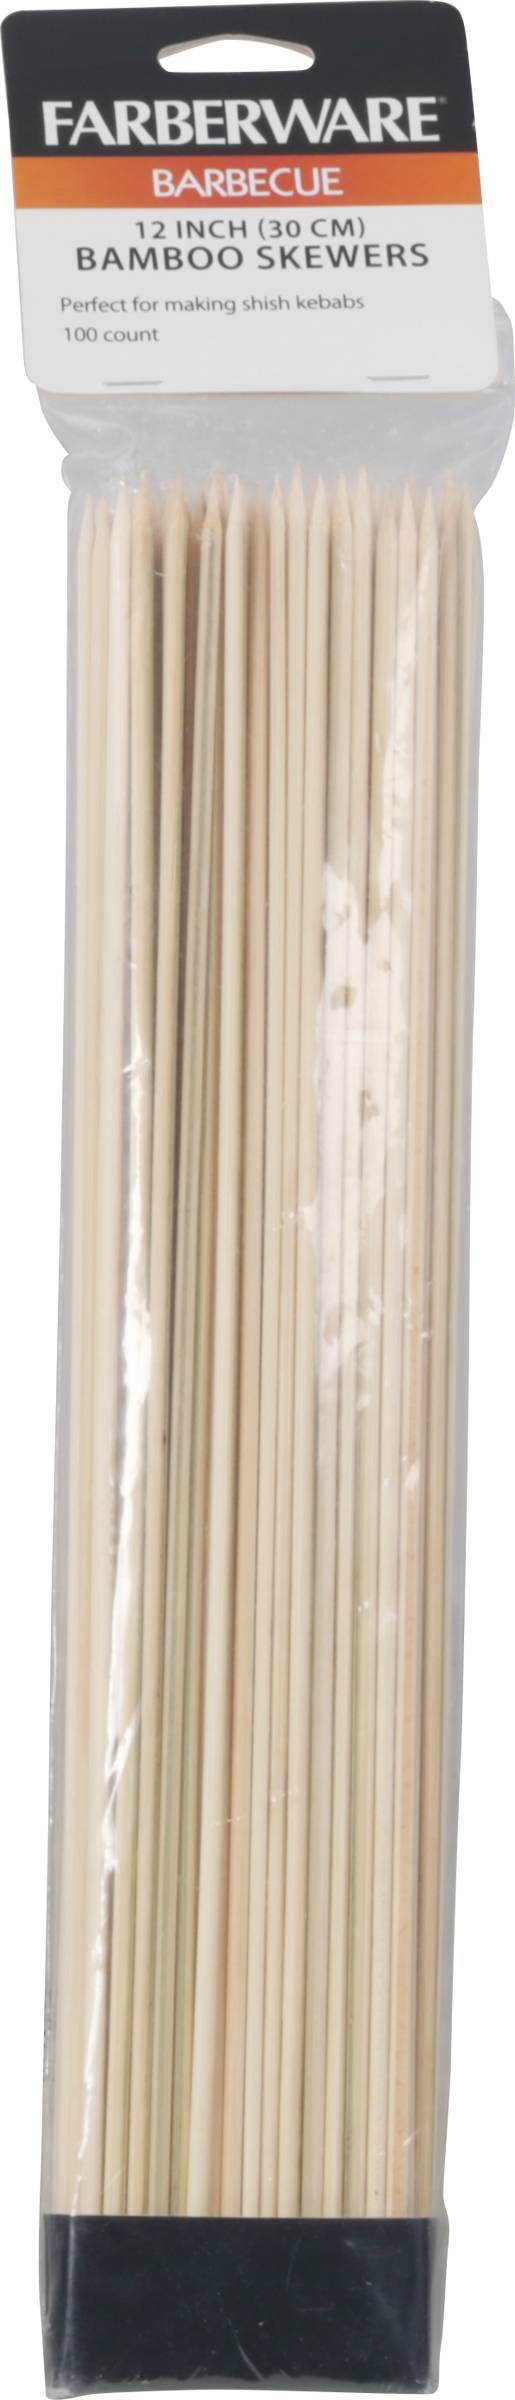 Farberware Bamboo Skewers, 100-Count